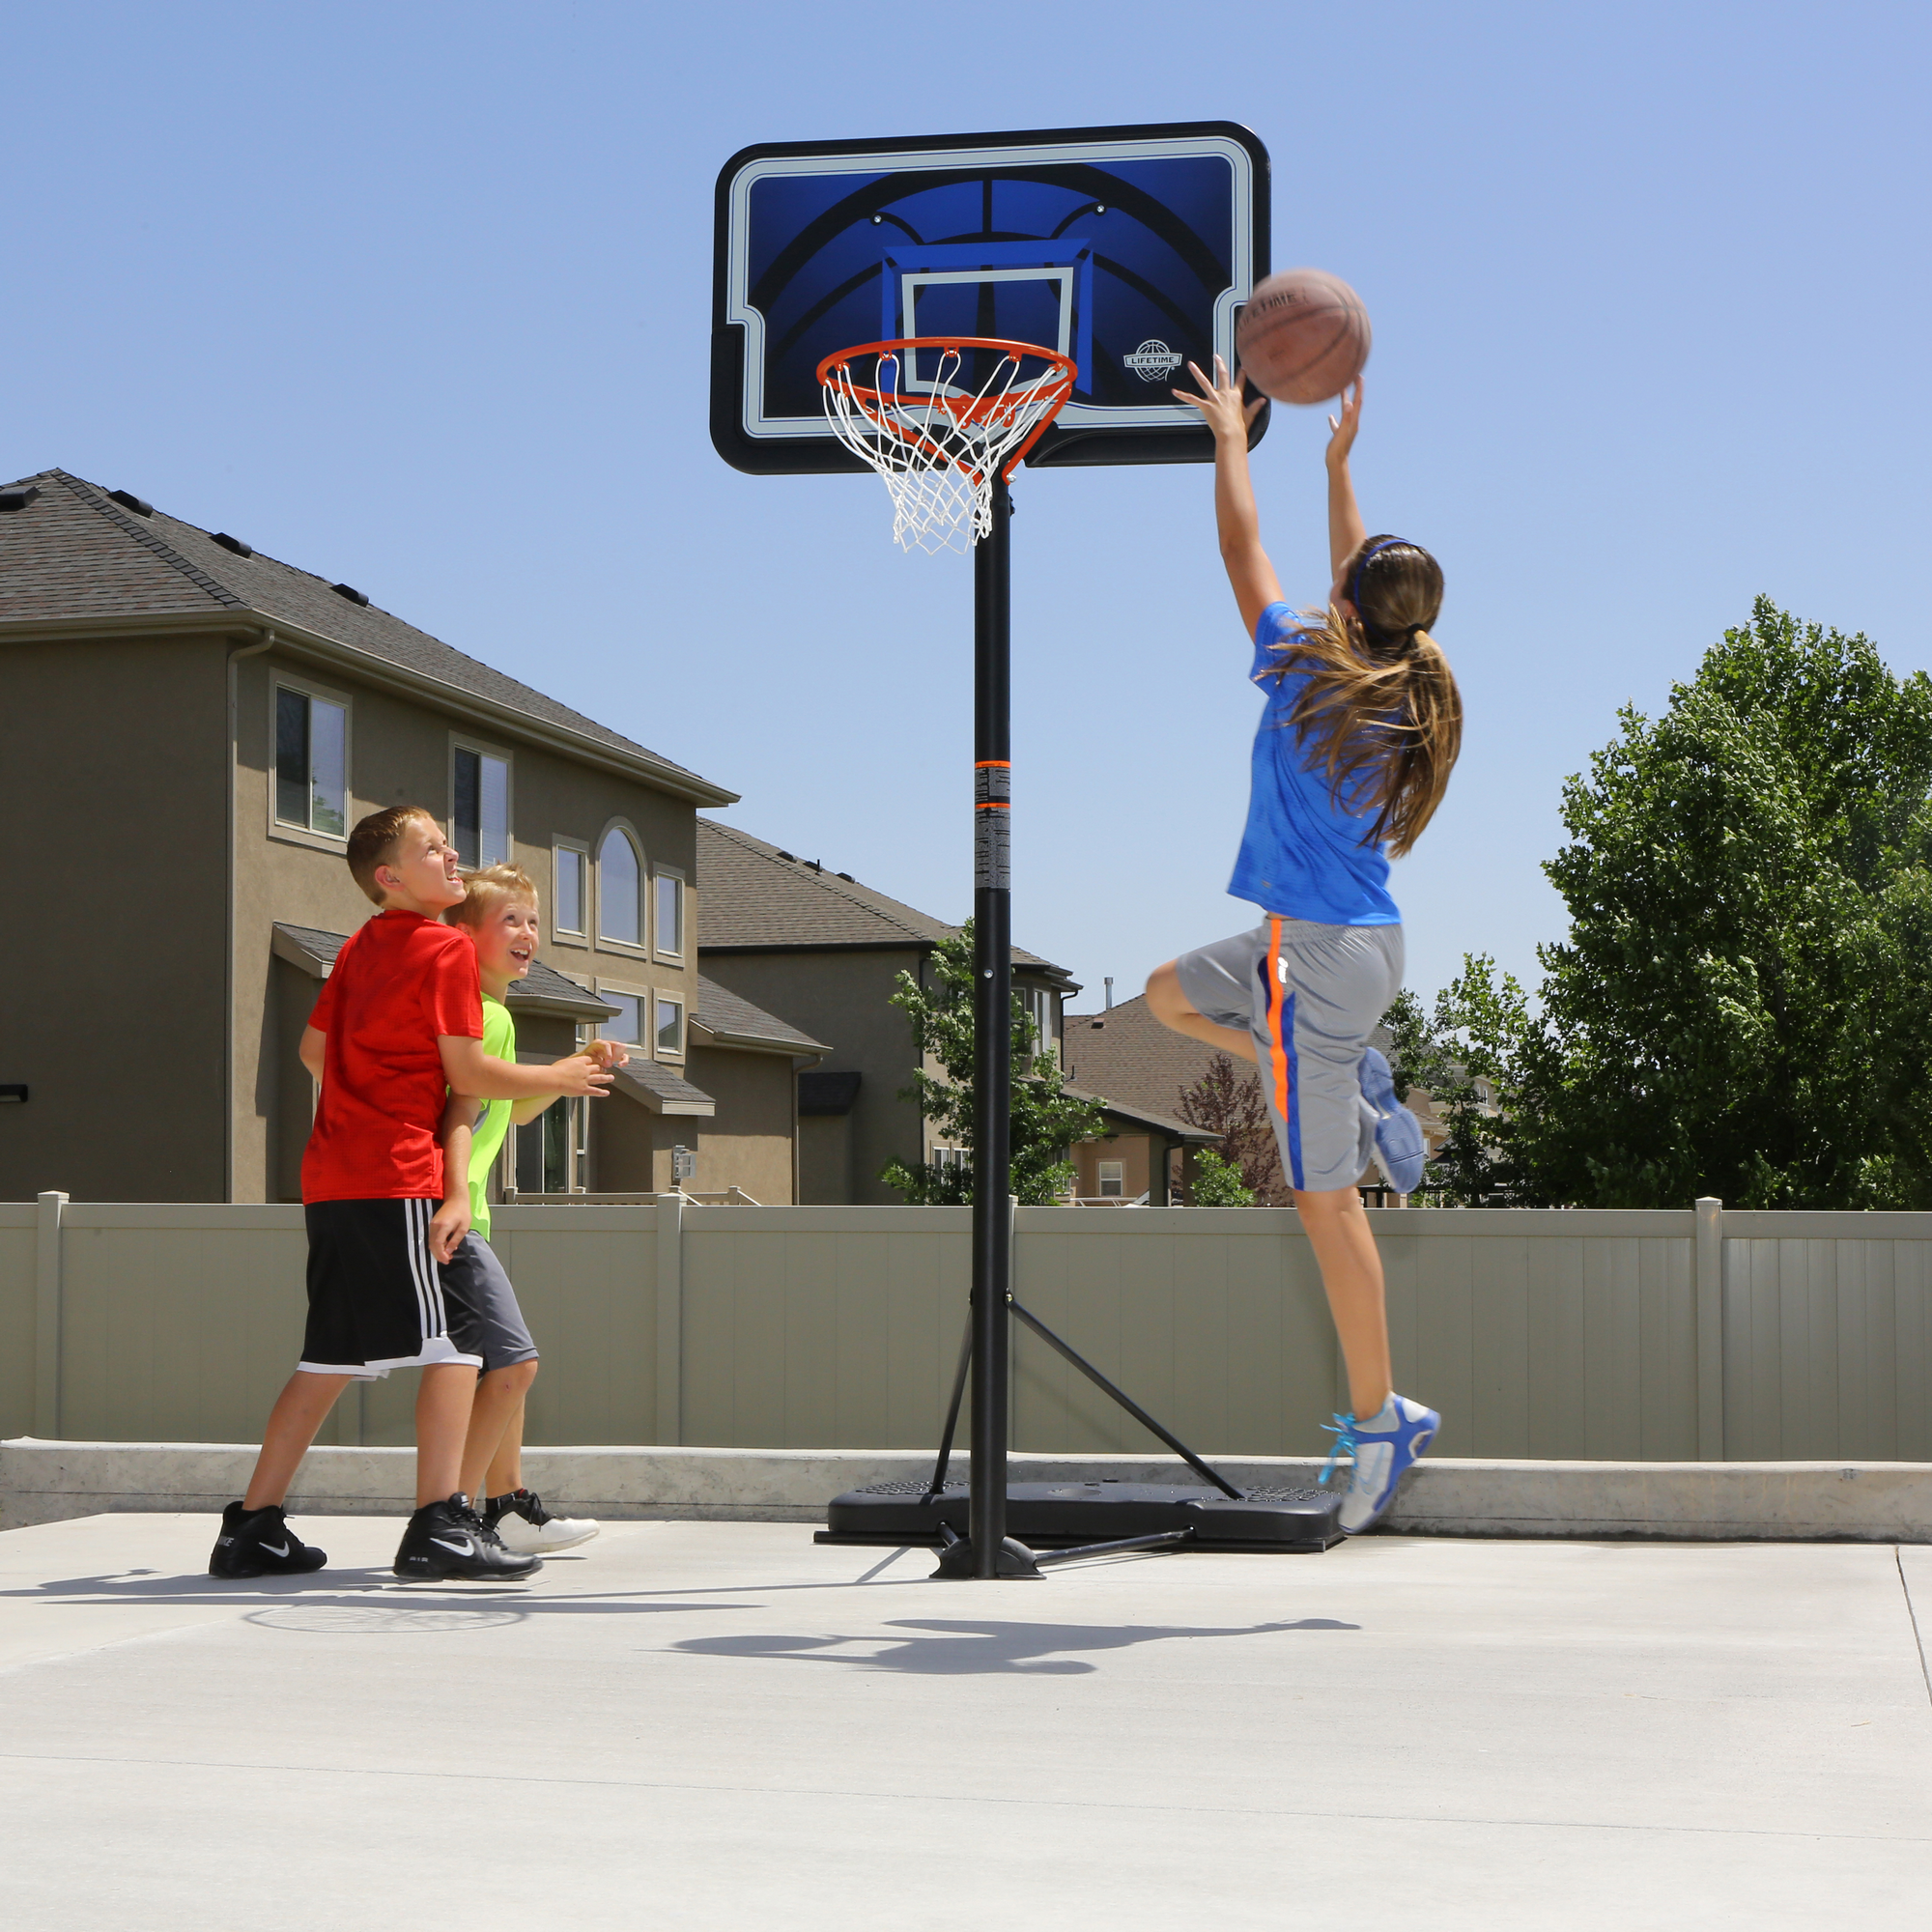 Basketballkorb 'Nevada' schwarz/blau mit Standfuss 112 x 304 cm + product picture